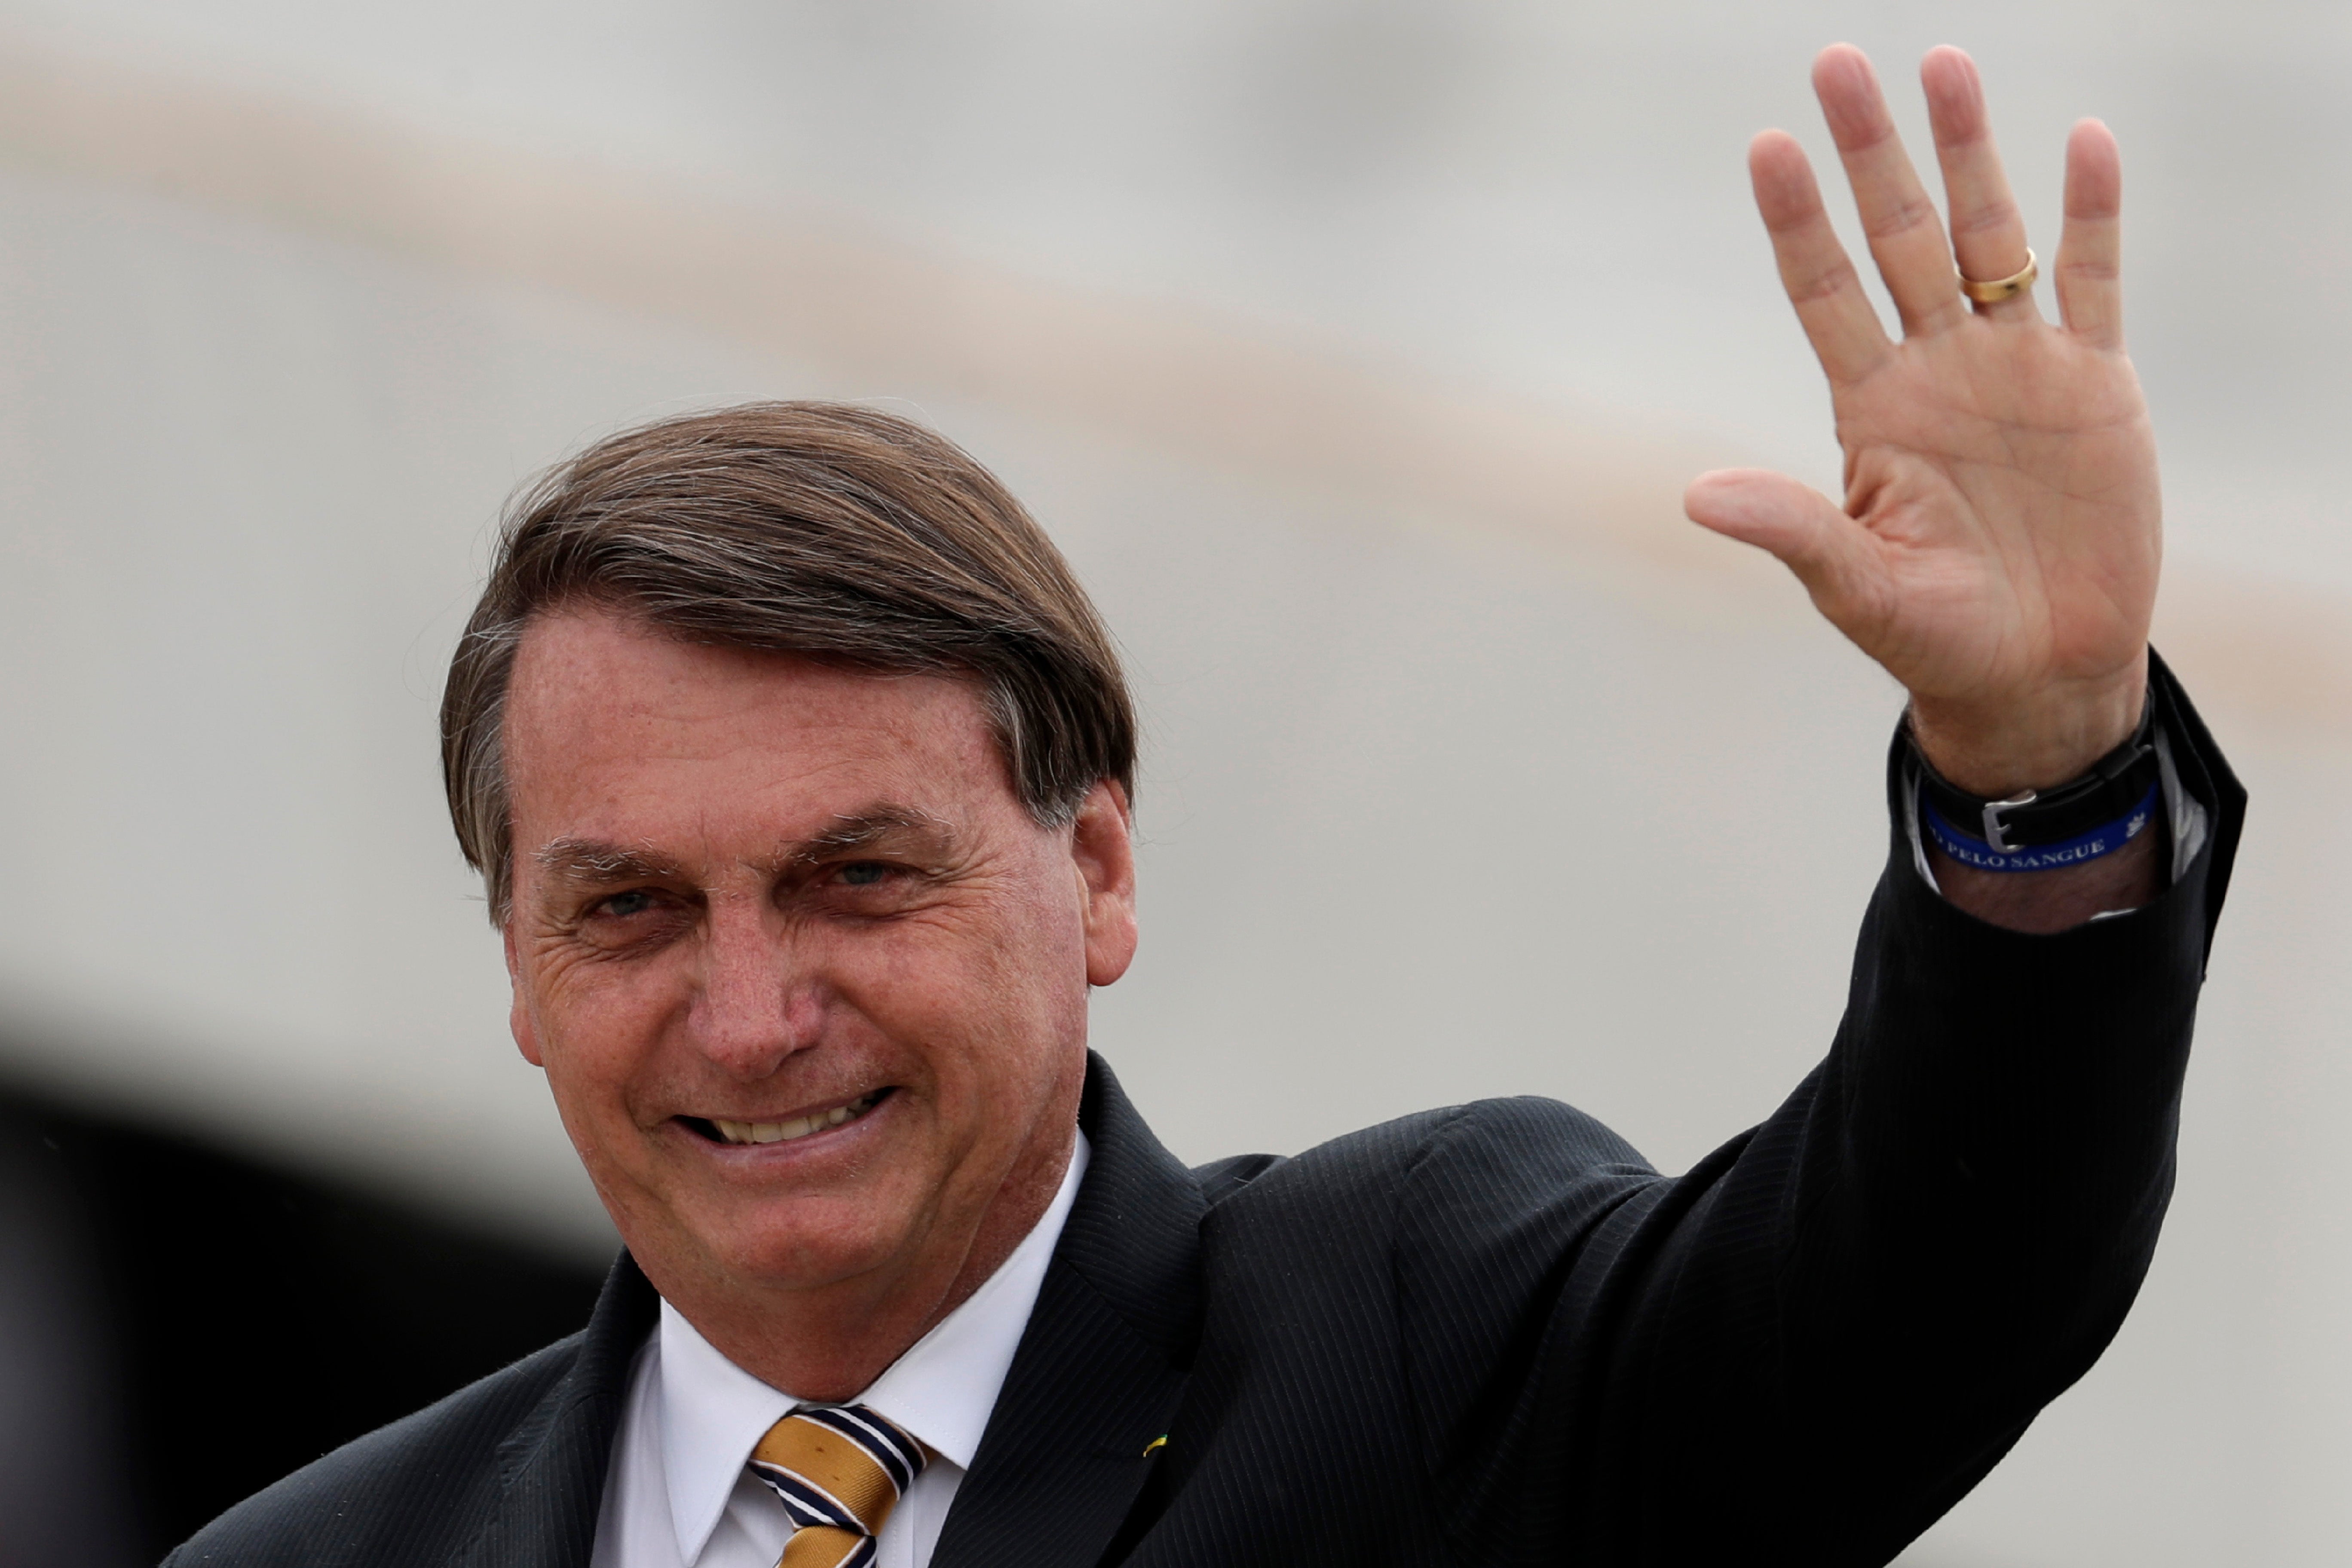 Bolsonaro ha minimizado los efectos de la pandemia constantemente